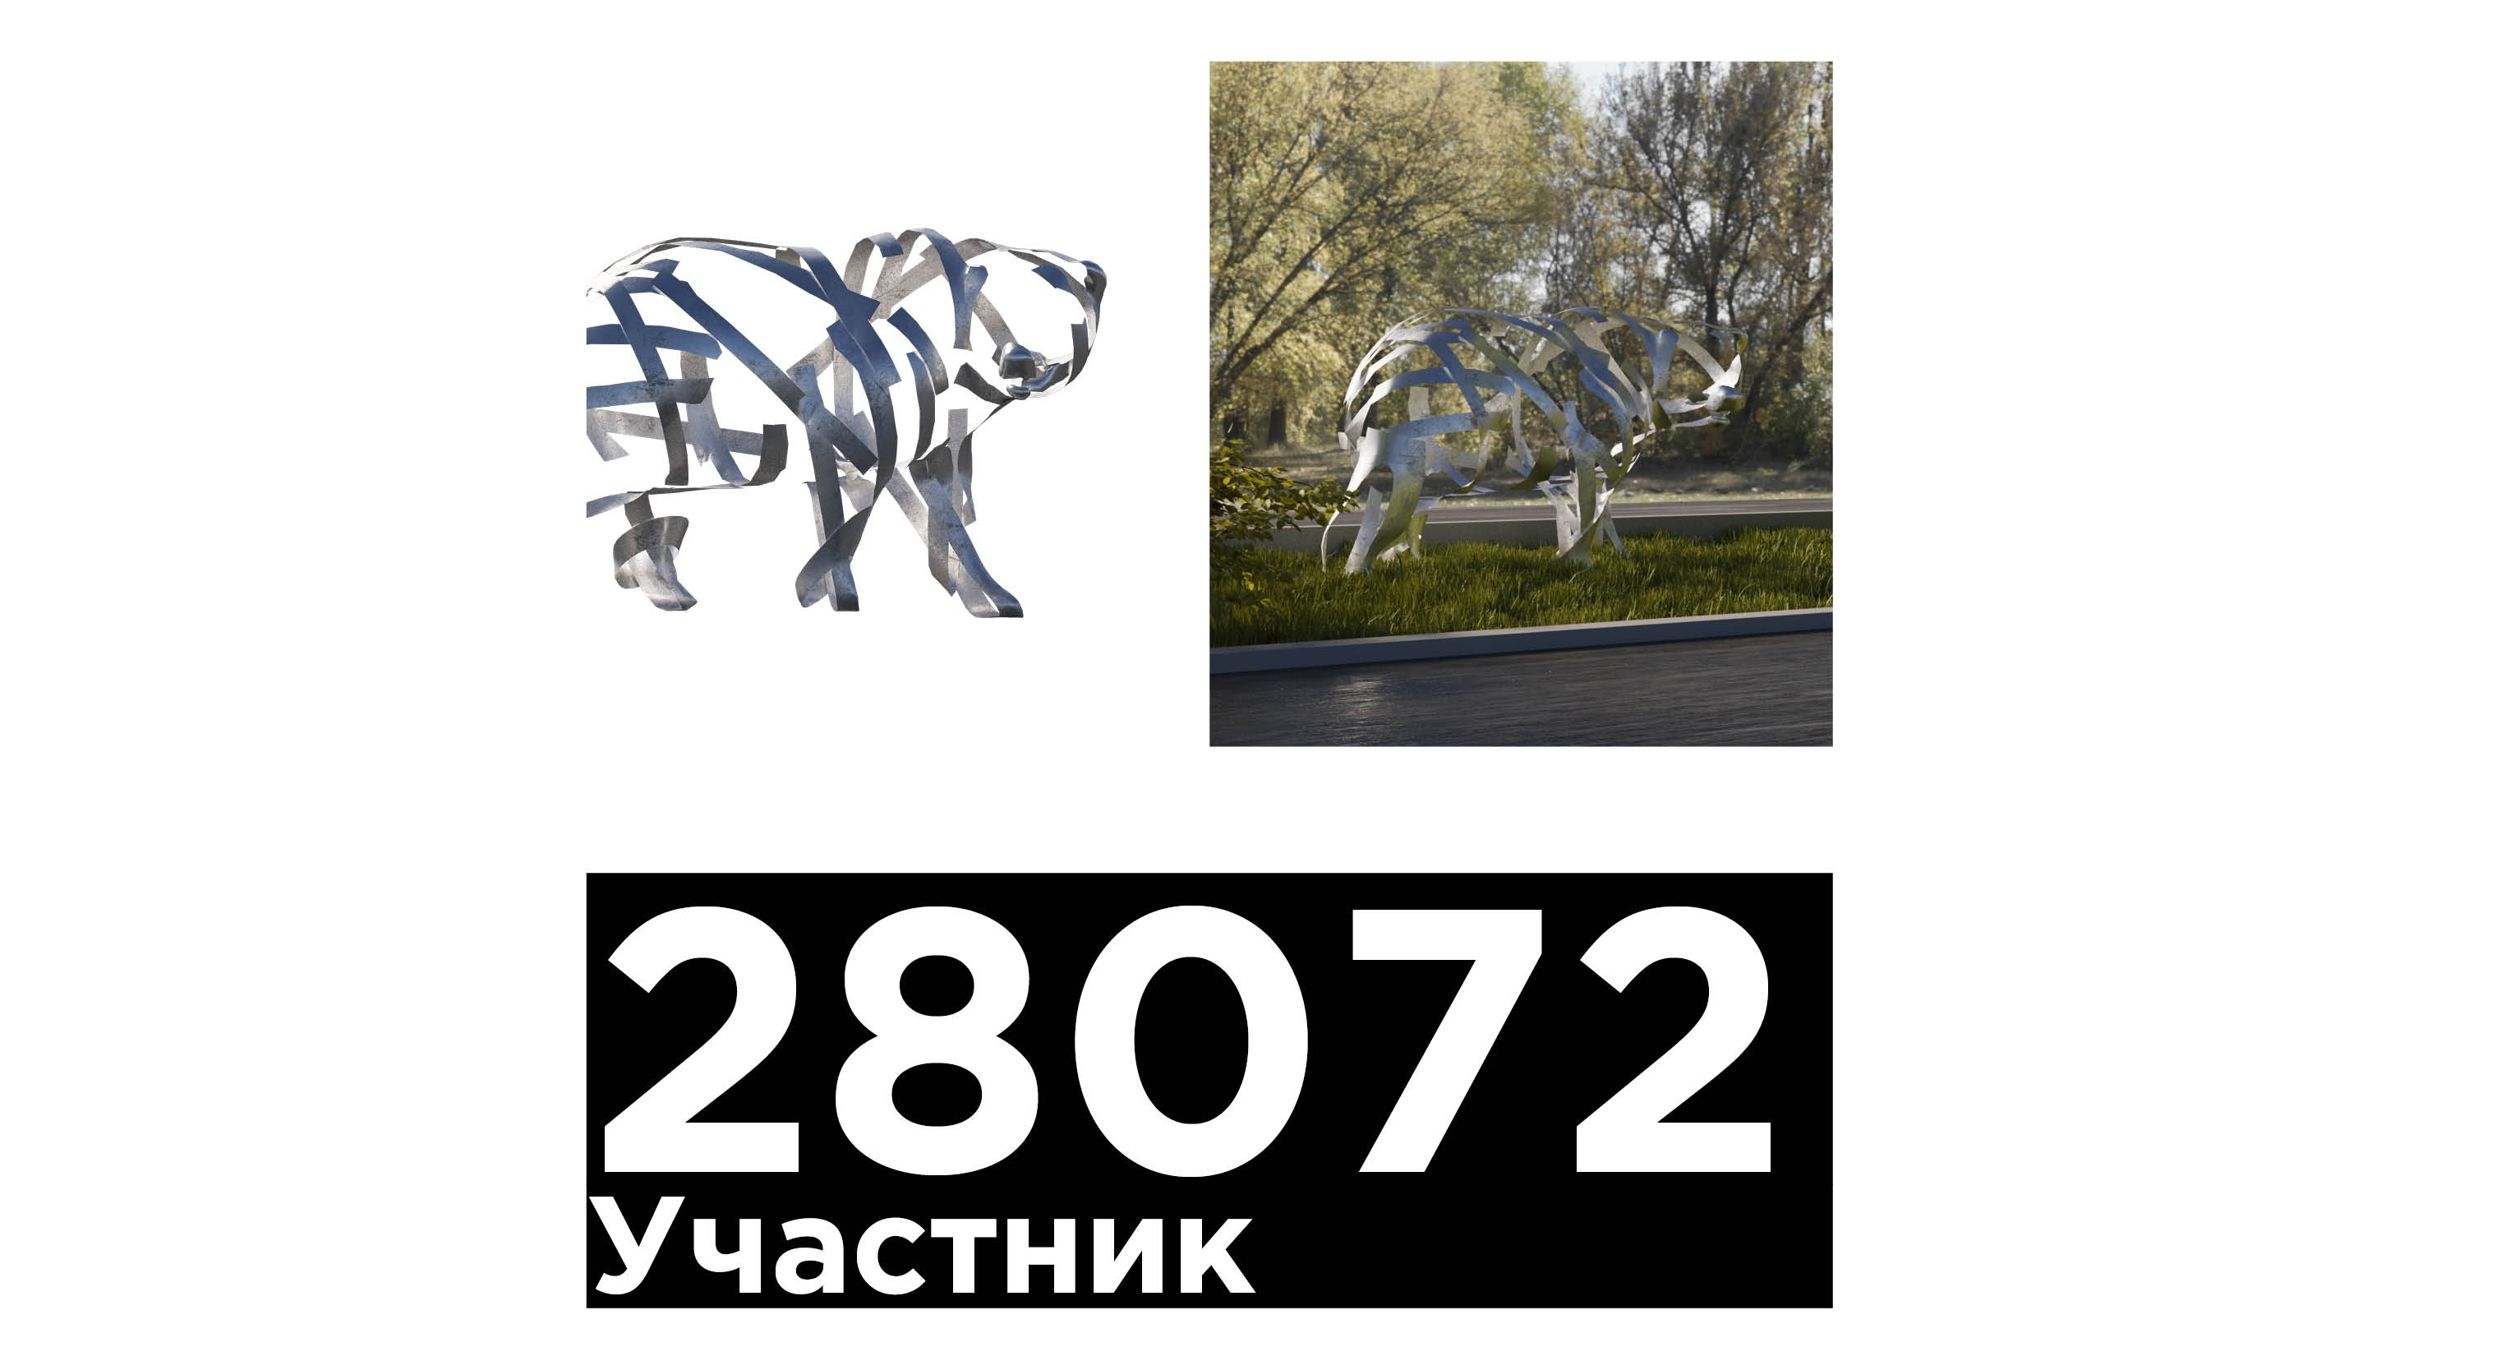 Ярославцев просят выбрать лучший медвежий арт-объект для установки в городе